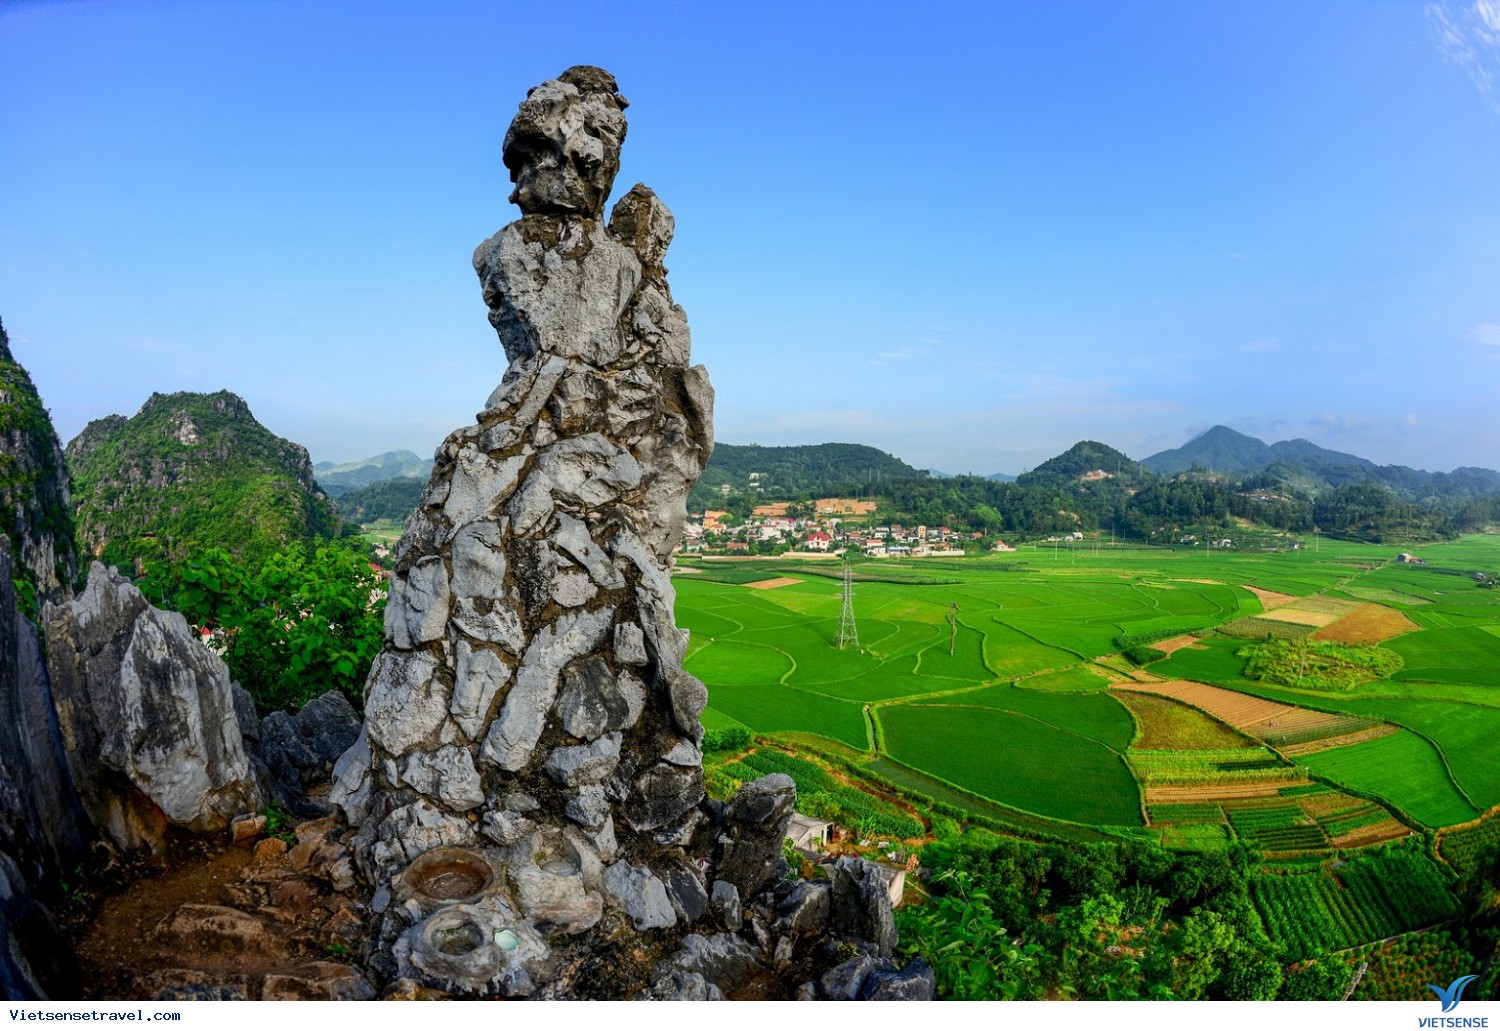 Bức tranh phong cảnh từ địa điểm du lịch đẹp Việt Nam sẽ cho bạn những khoảnh khắc đẹp nhất trên trái đất. Hãy dành thời gian để bên gia đình bạn và cùng chiêm ngưỡng những vẻ đẹp của thiên nhiên.